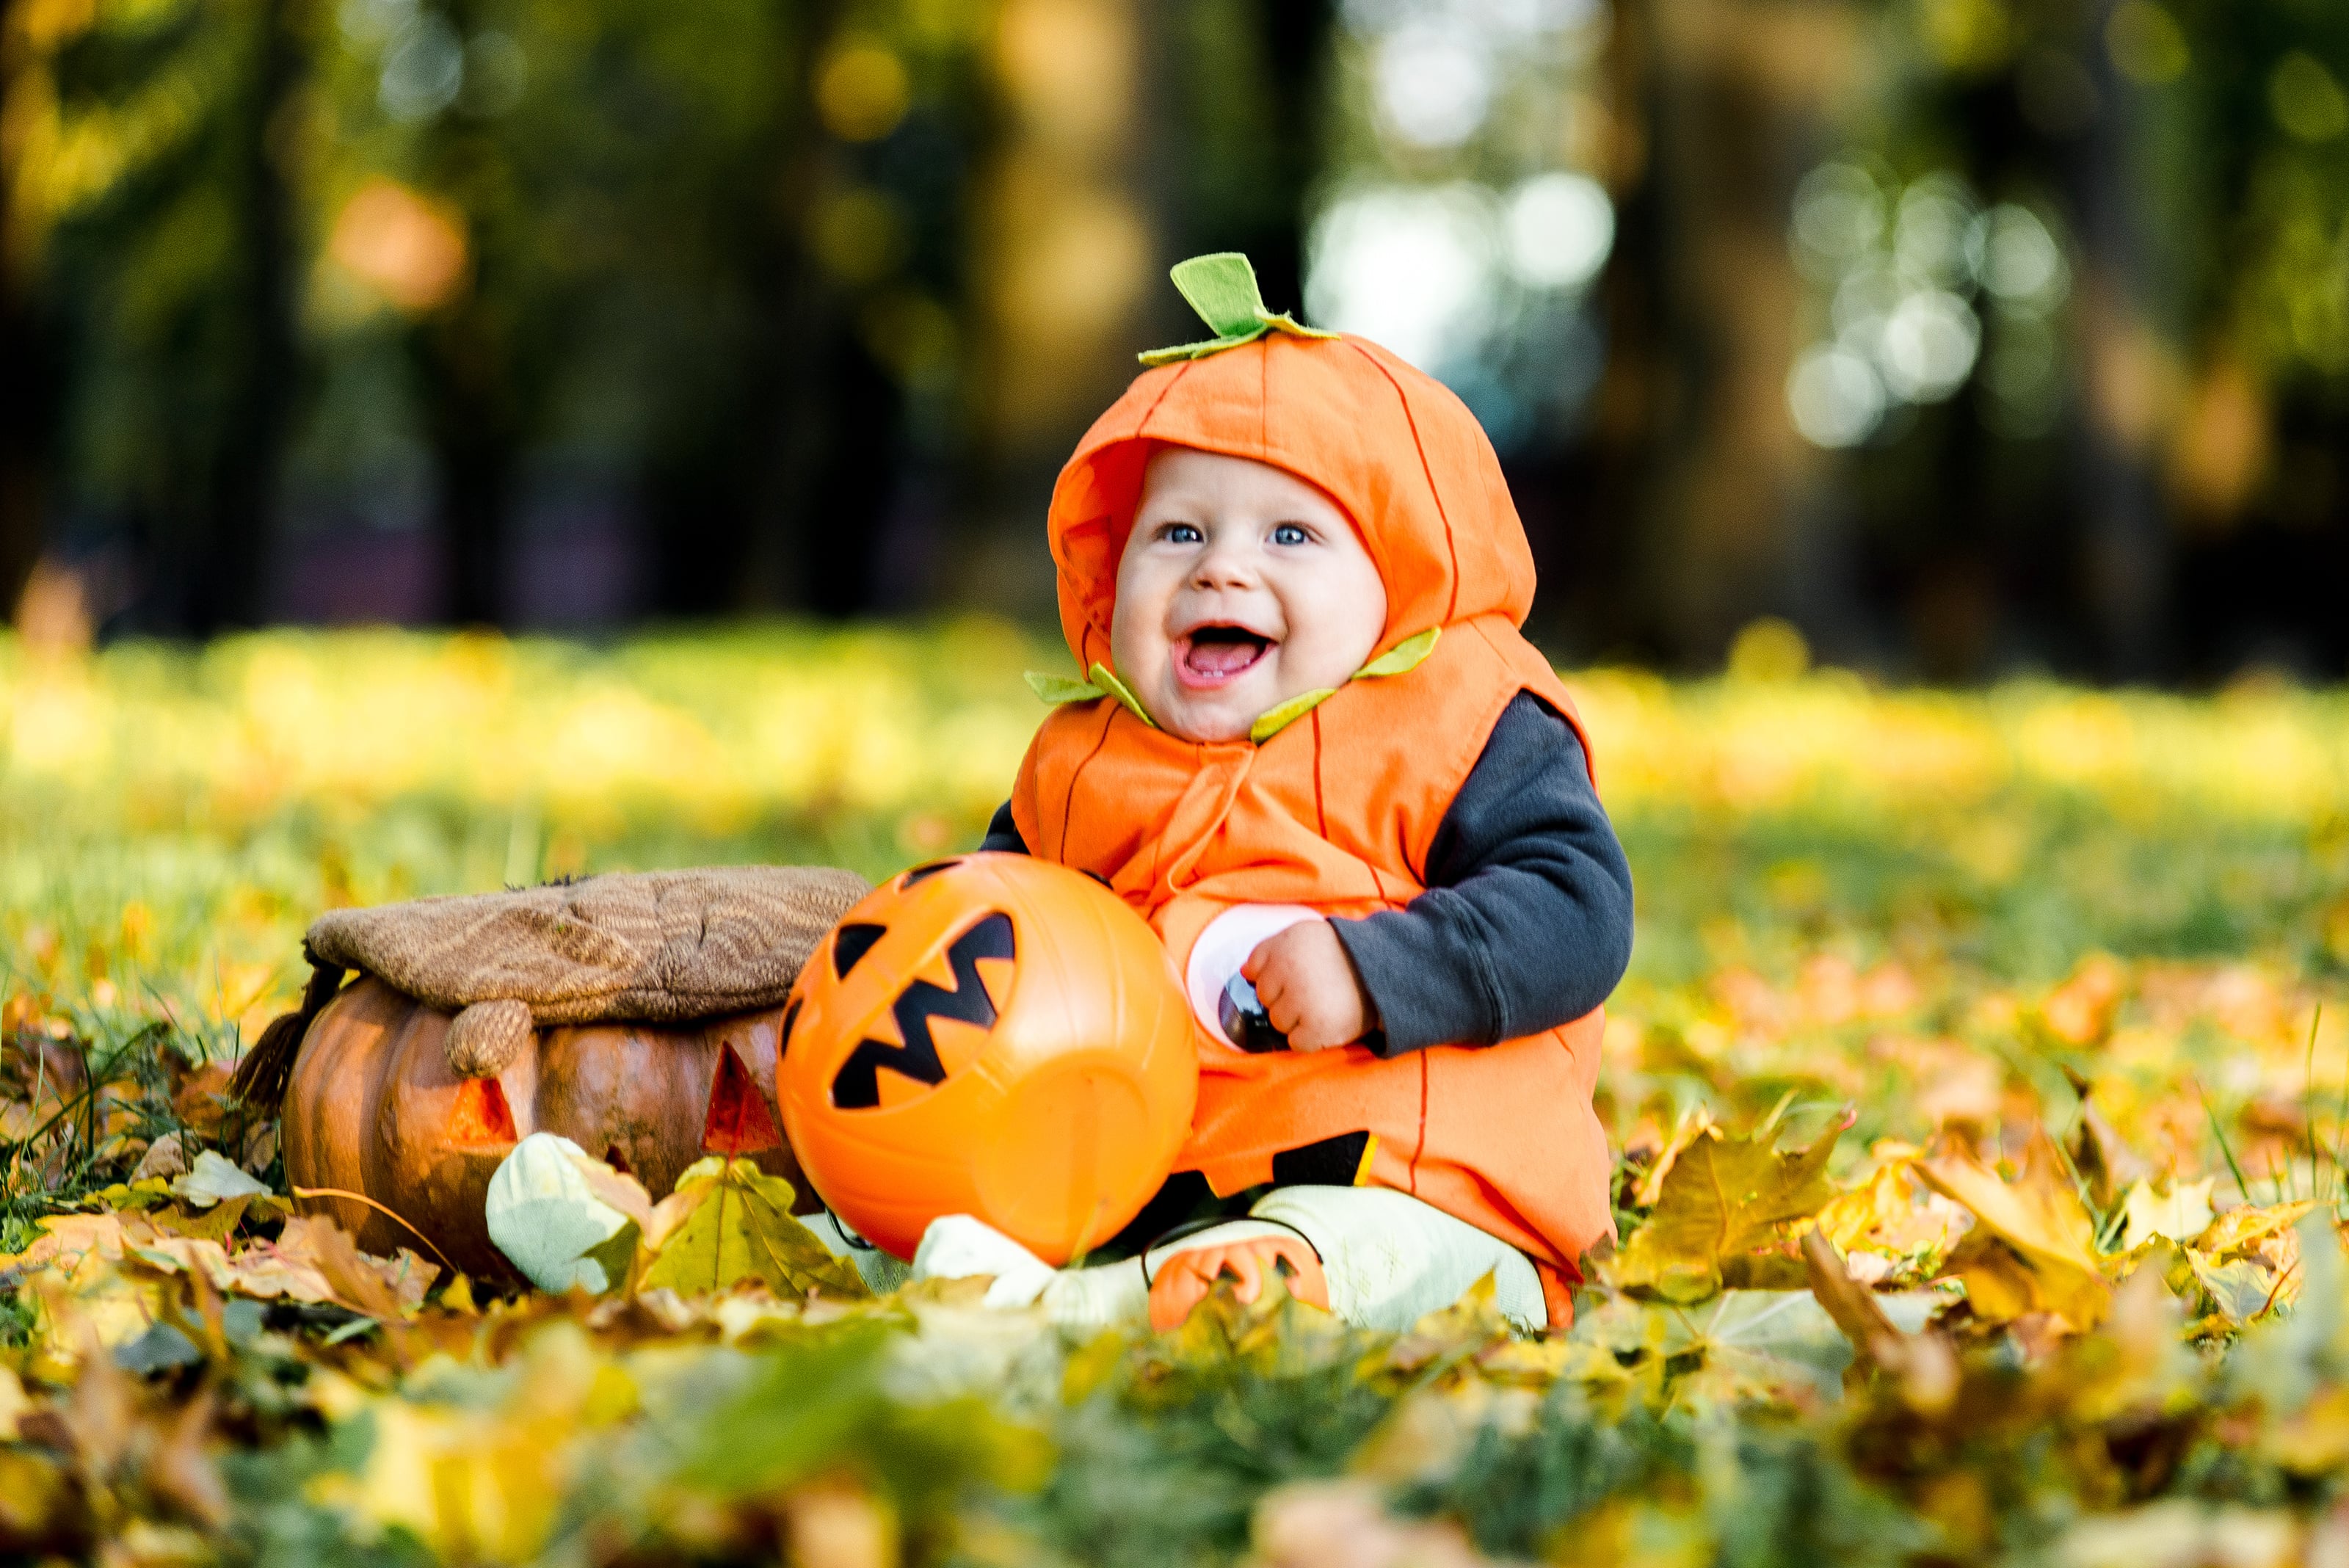 Baby in pumpkin costume for Halloween